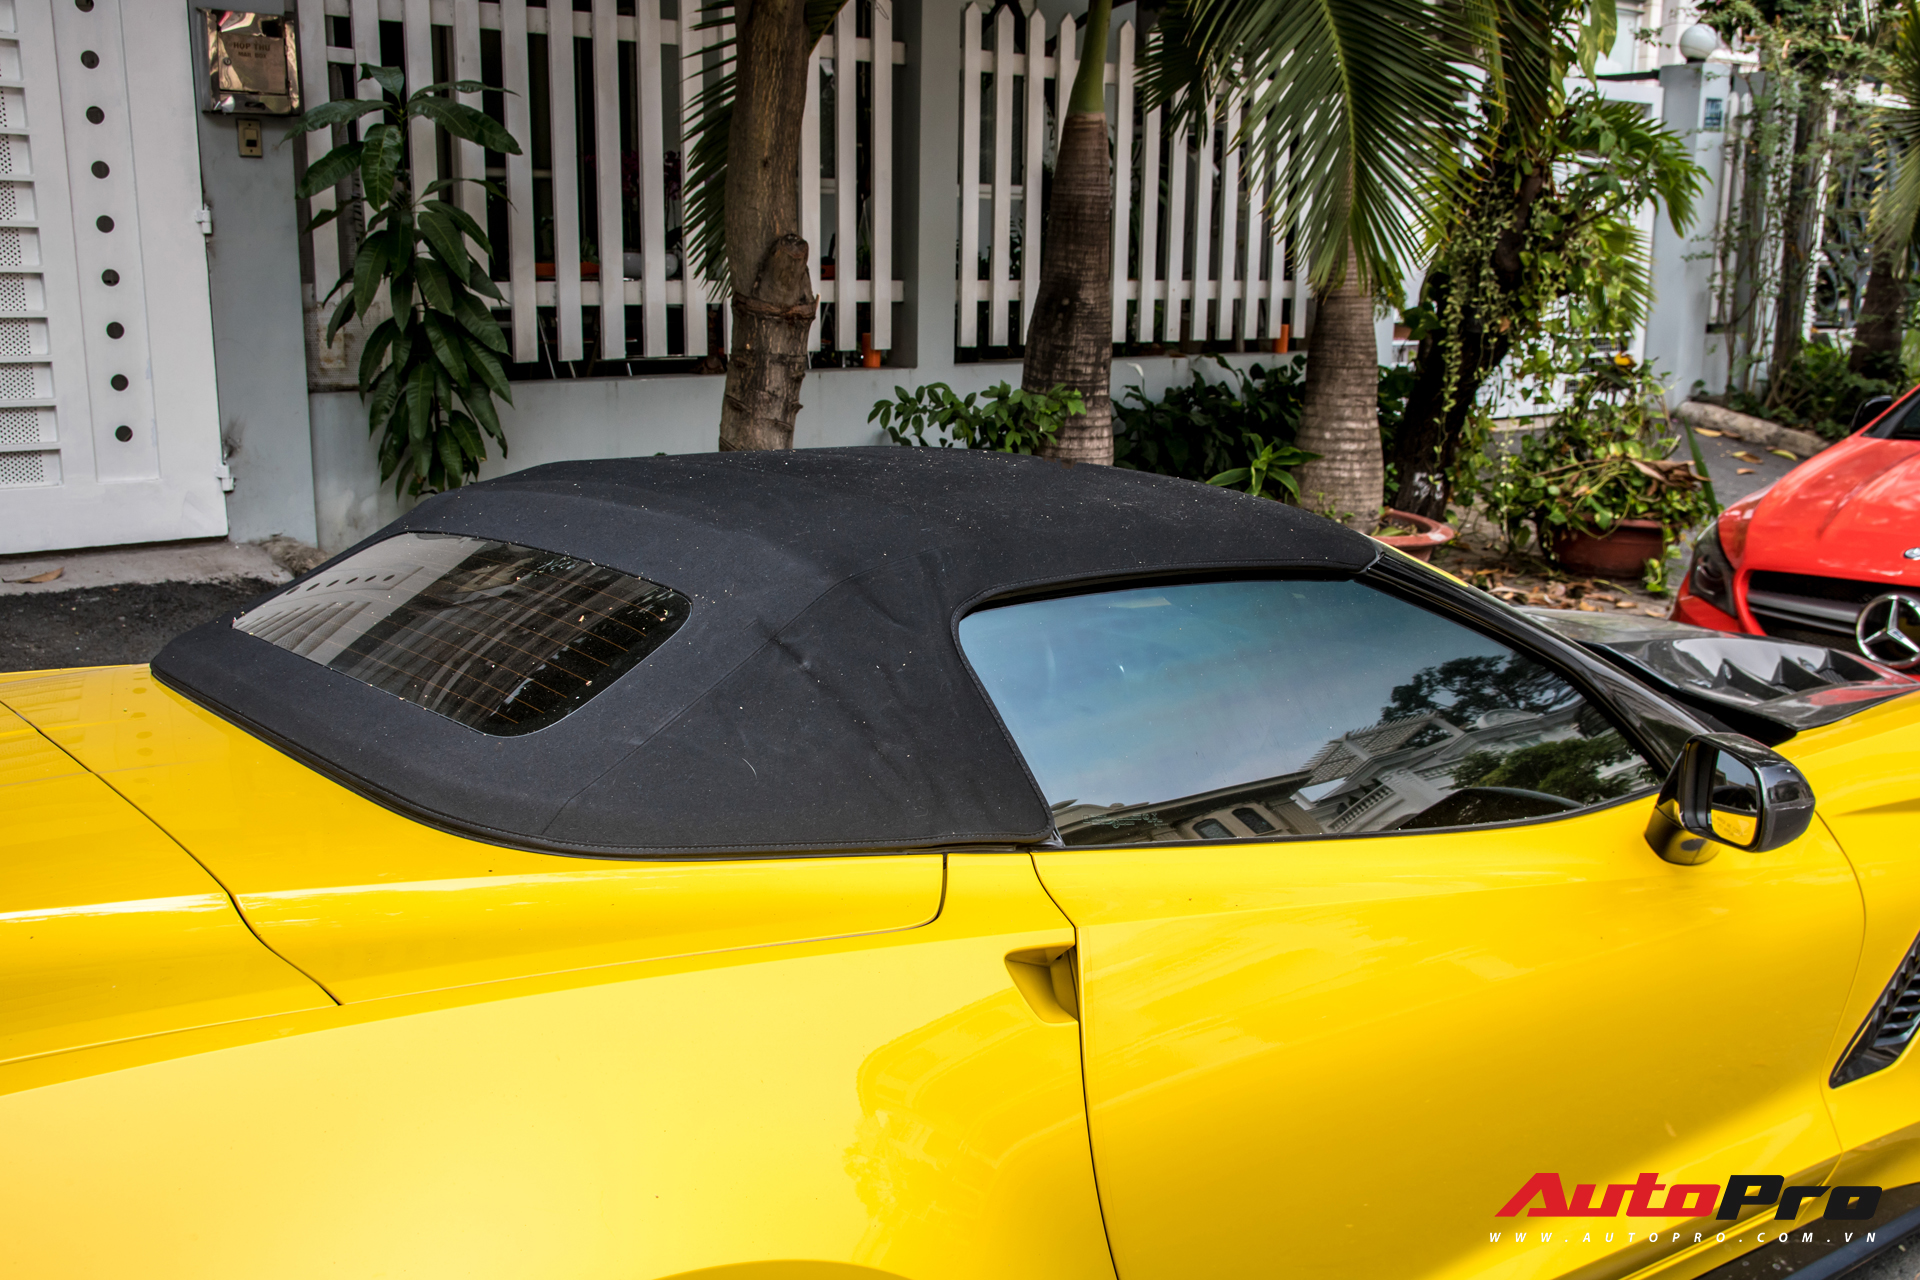 Chevrolet Corvette C7 Z06 Convertible độc nhất Việt Nam: Biển số gánh, lên đời với chi tiết mới lạ - Ảnh 3.